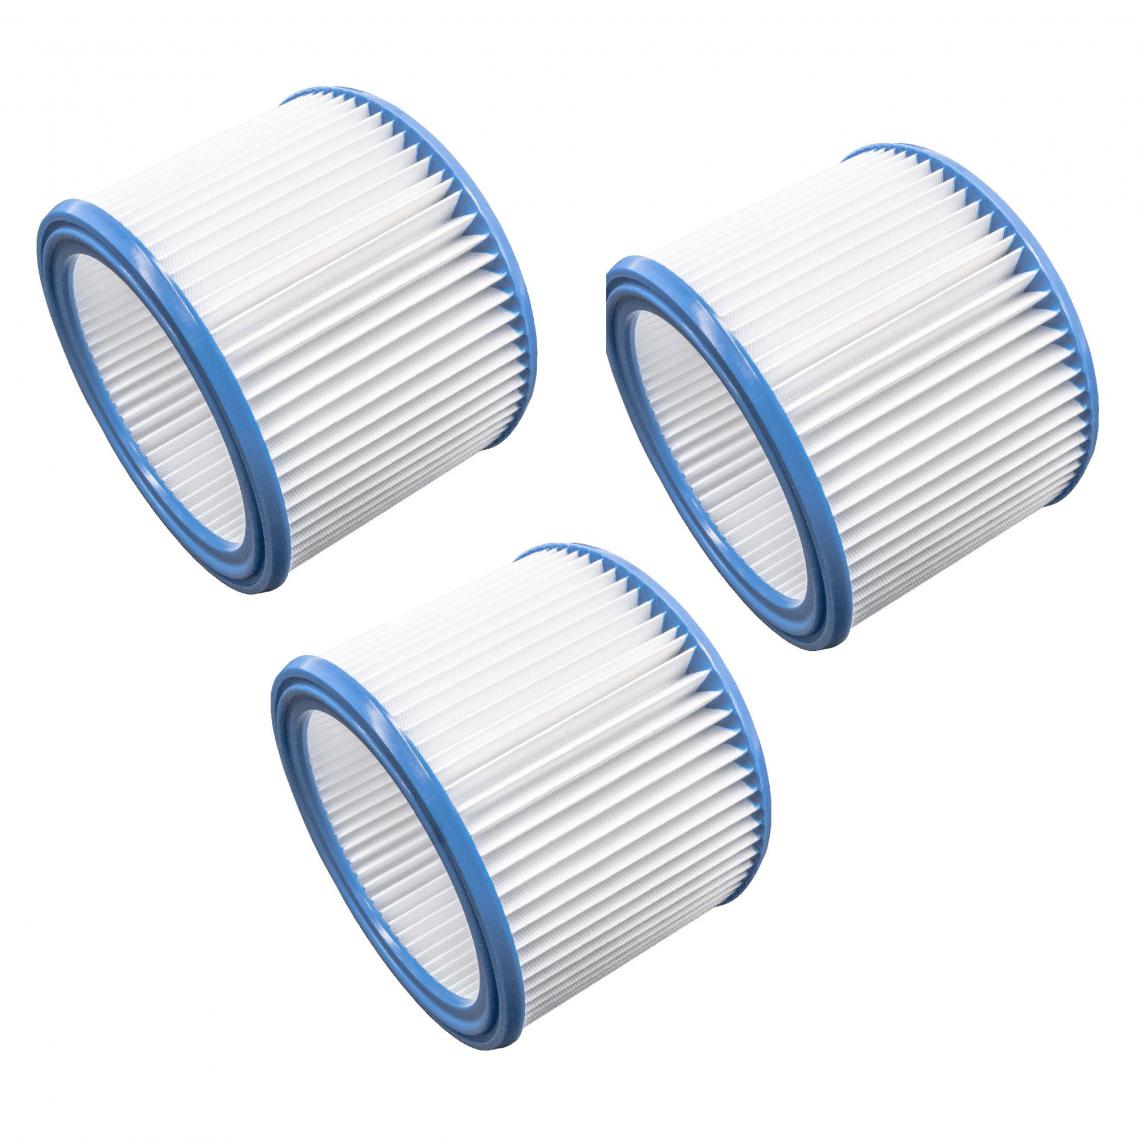 Vhbw - vhbw Set de filtres 3x Filtre plissé compatible avec Nilfisk / Alto / Wap Multi 20, 30 aspirateur à sec ou humide - Filtre à cartouche - Accessoire entretien des sols